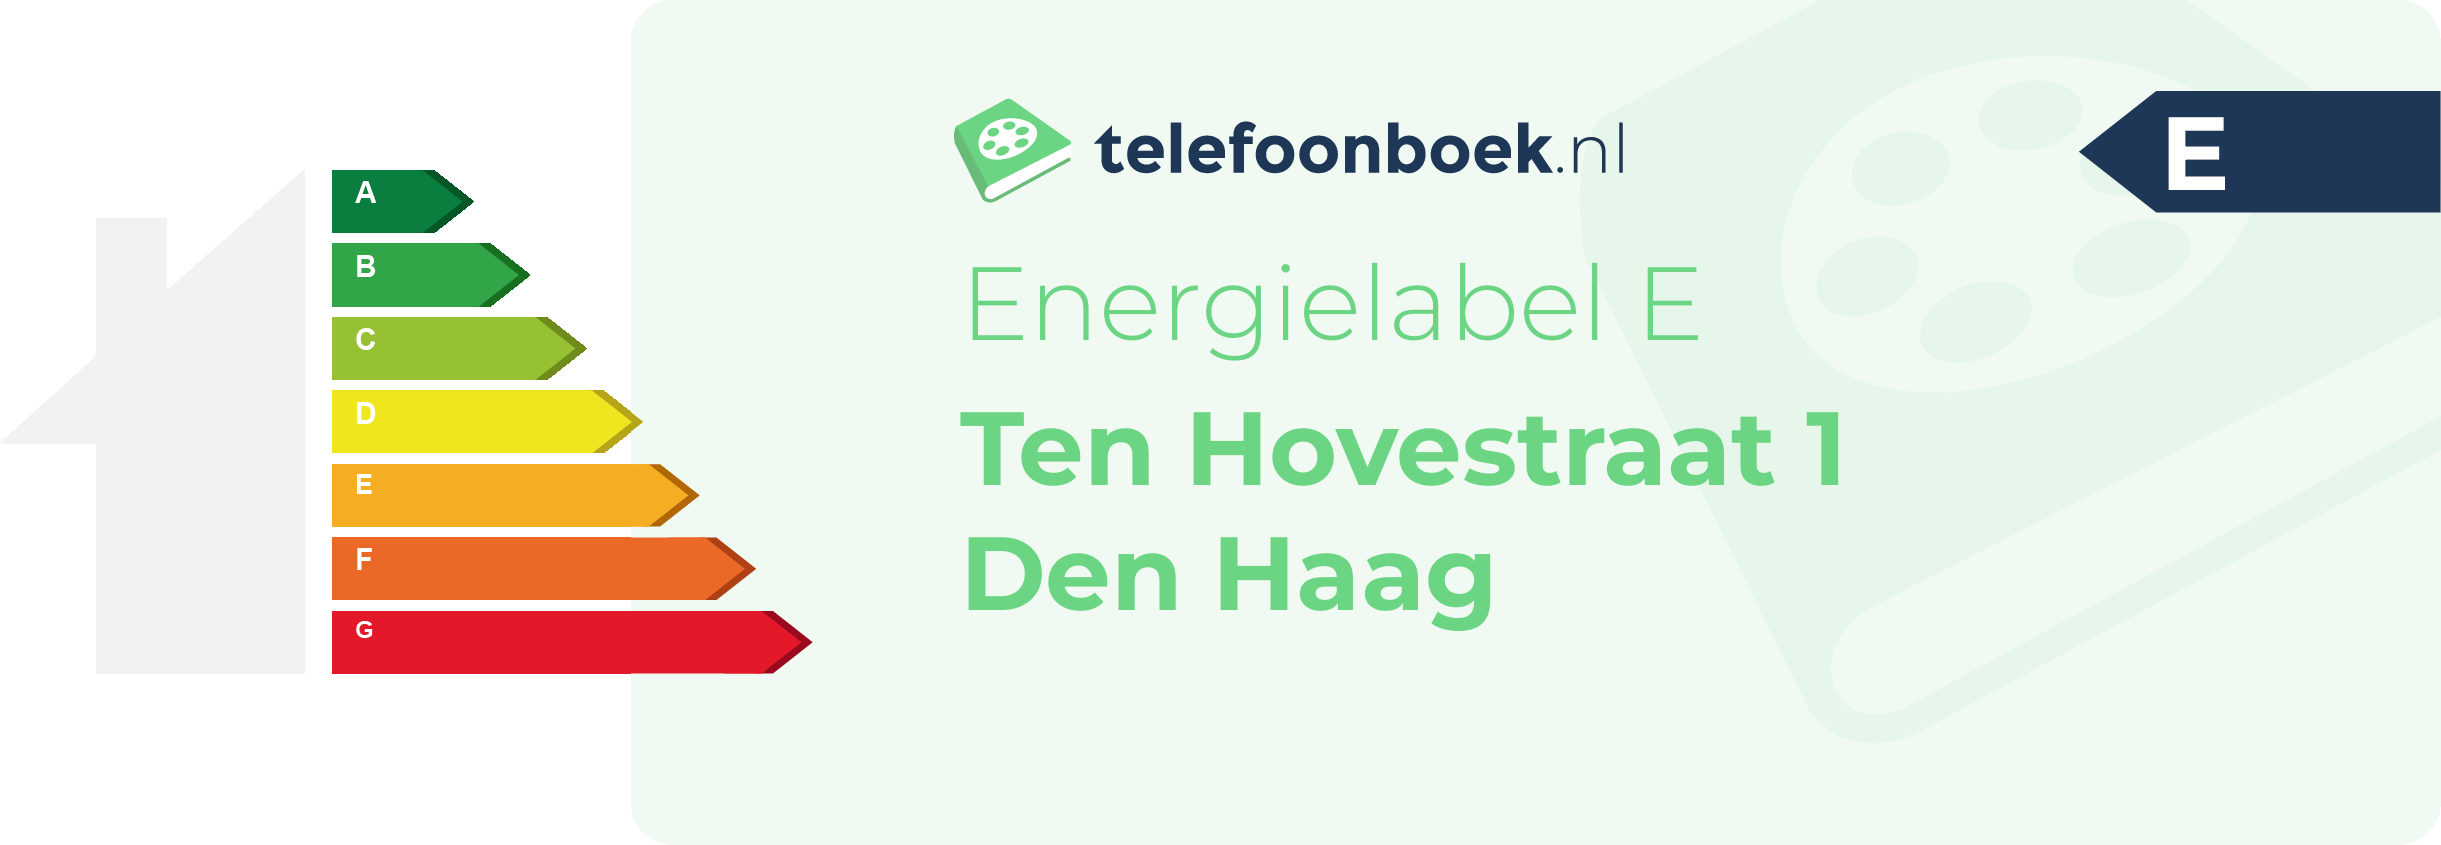 Energielabel Ten Hovestraat 1 Den Haag